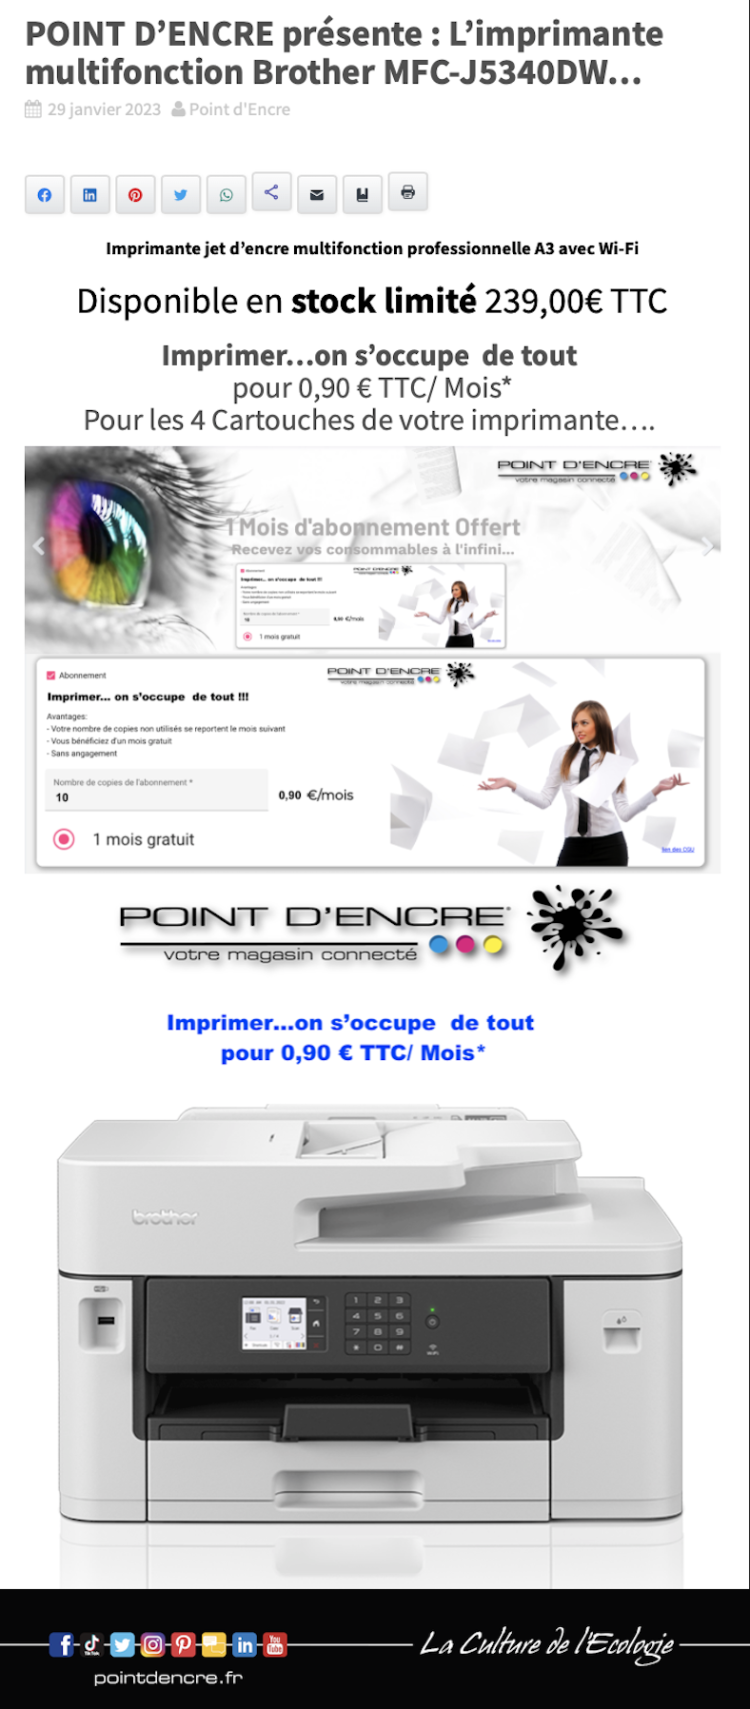 POINT D’ENCRE présente : L’imprimante multifonction Brother MFC-J5340DW...